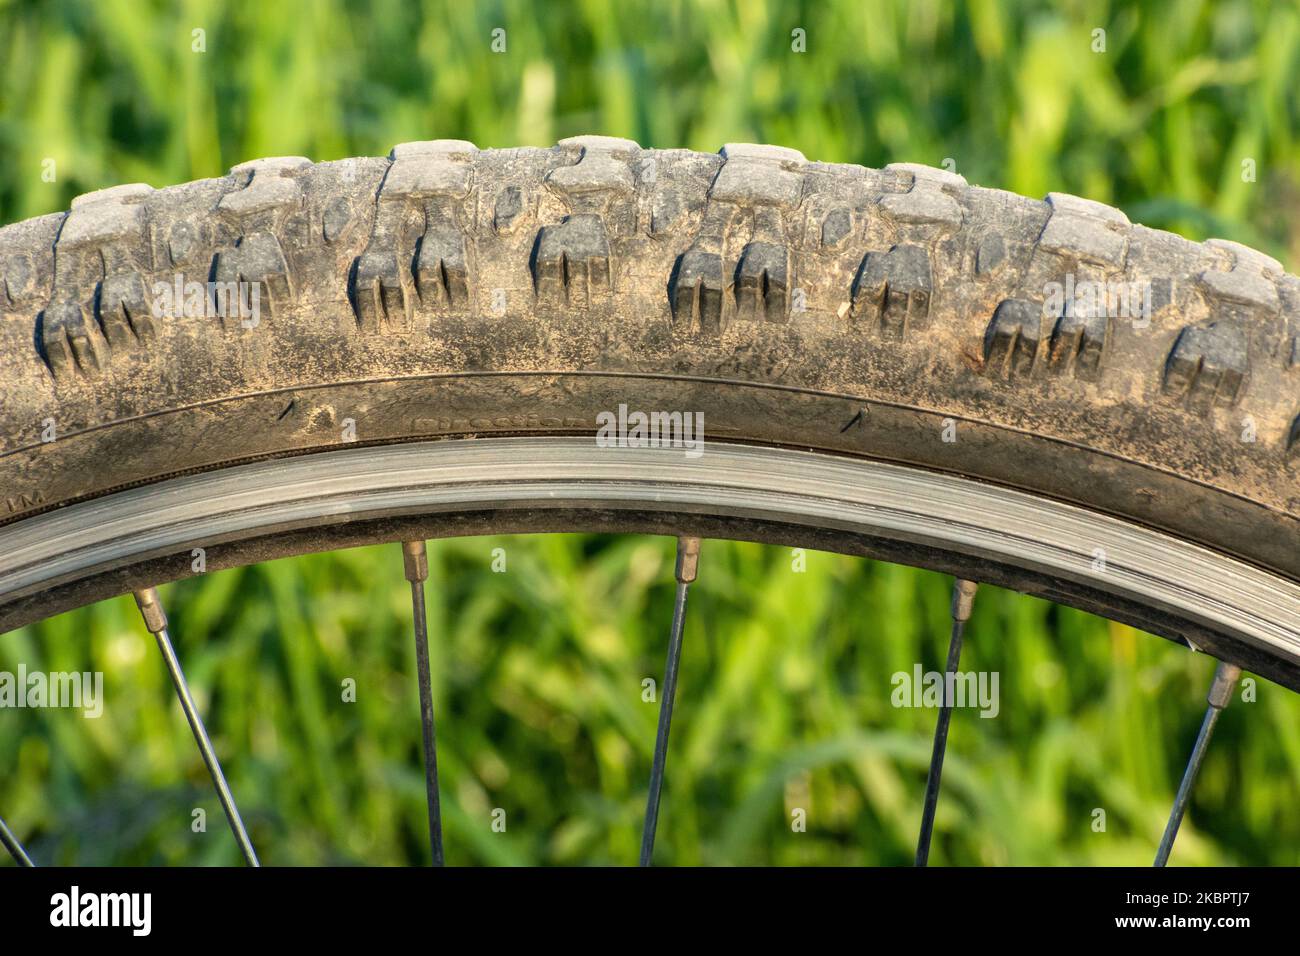 Nahaufnahme eines schmutzigen Fahrradrades mit Reifen und Speichen Stockfoto